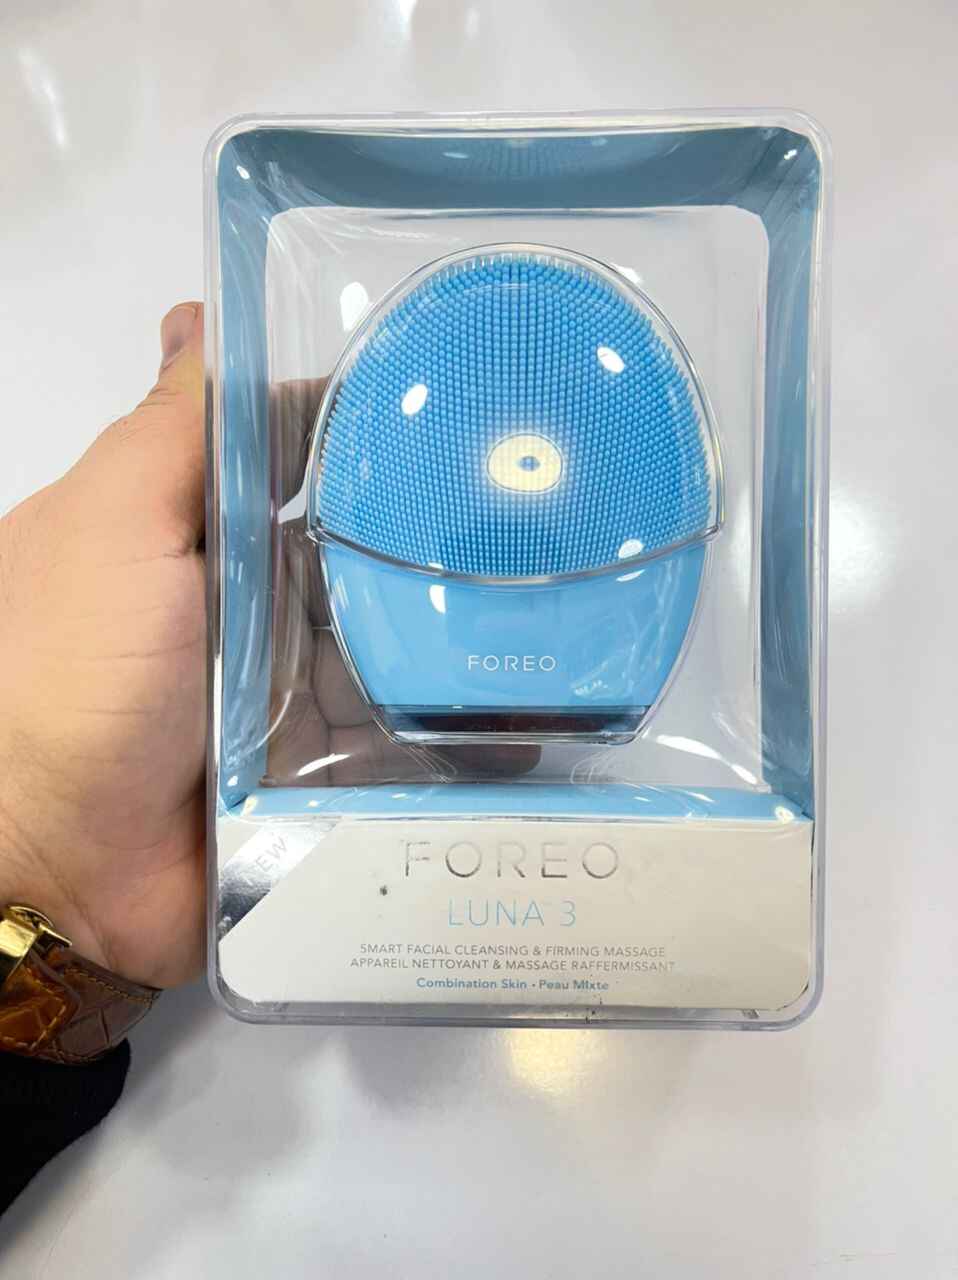 فیس براش فورئو FOREO مدل لونا LUNA 3 | پاکسازی صورت با فناوری T-SONIC، ضد چروک، رنگ آبی